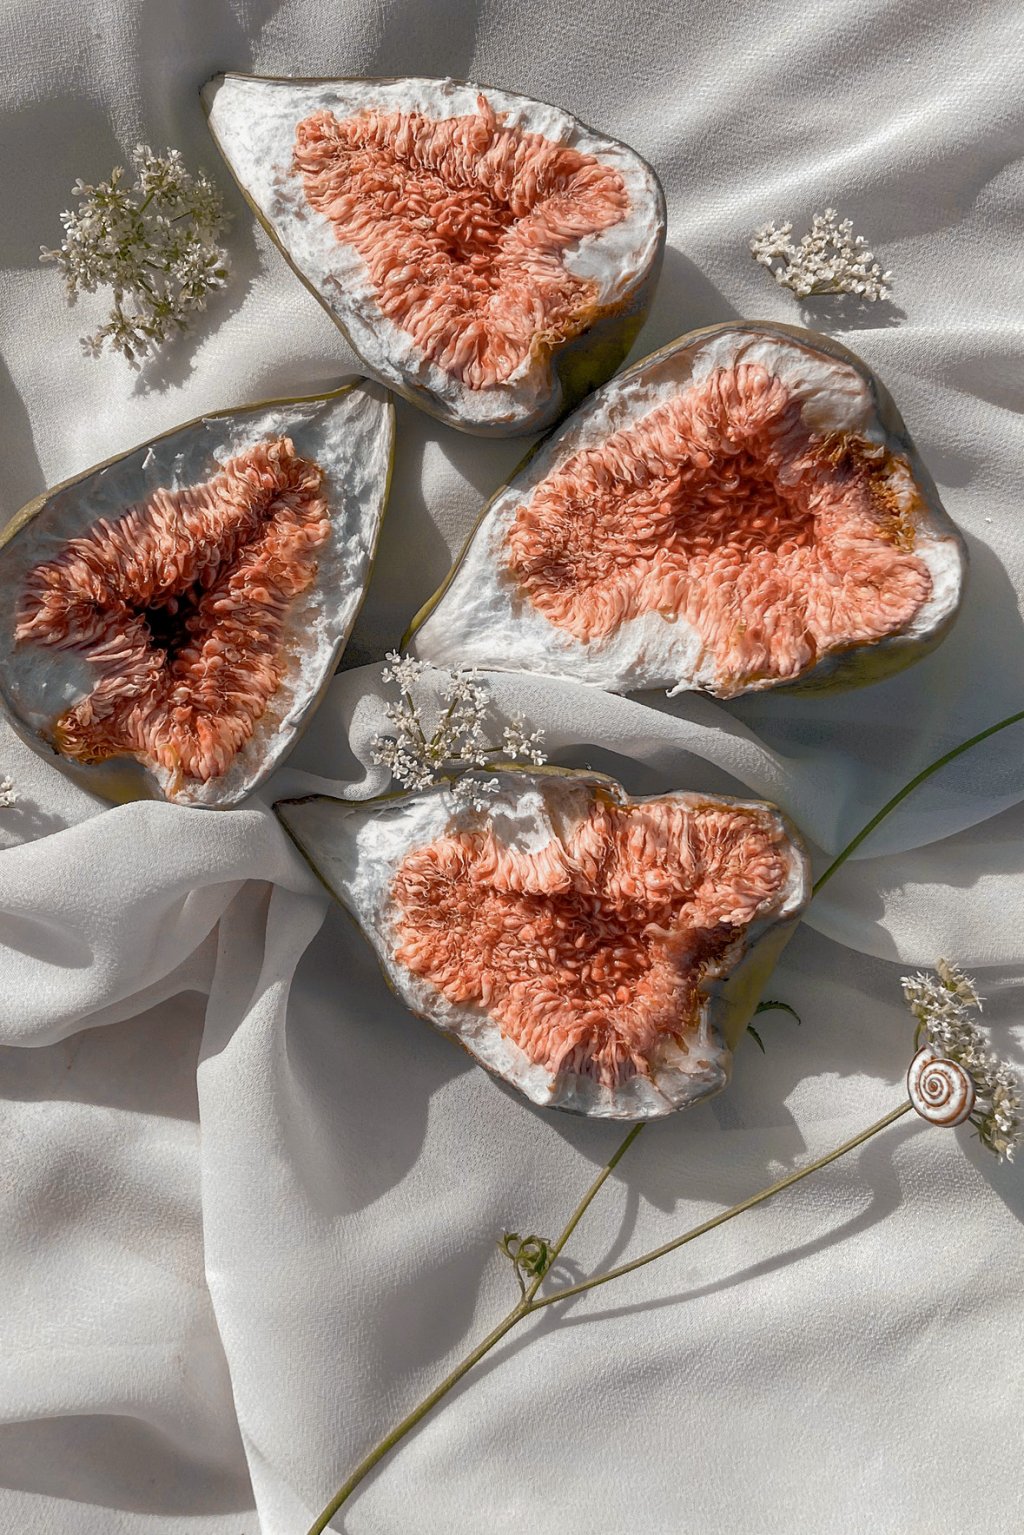 figos cortados ao meio sobre um tecido branco amassado e florzinhas